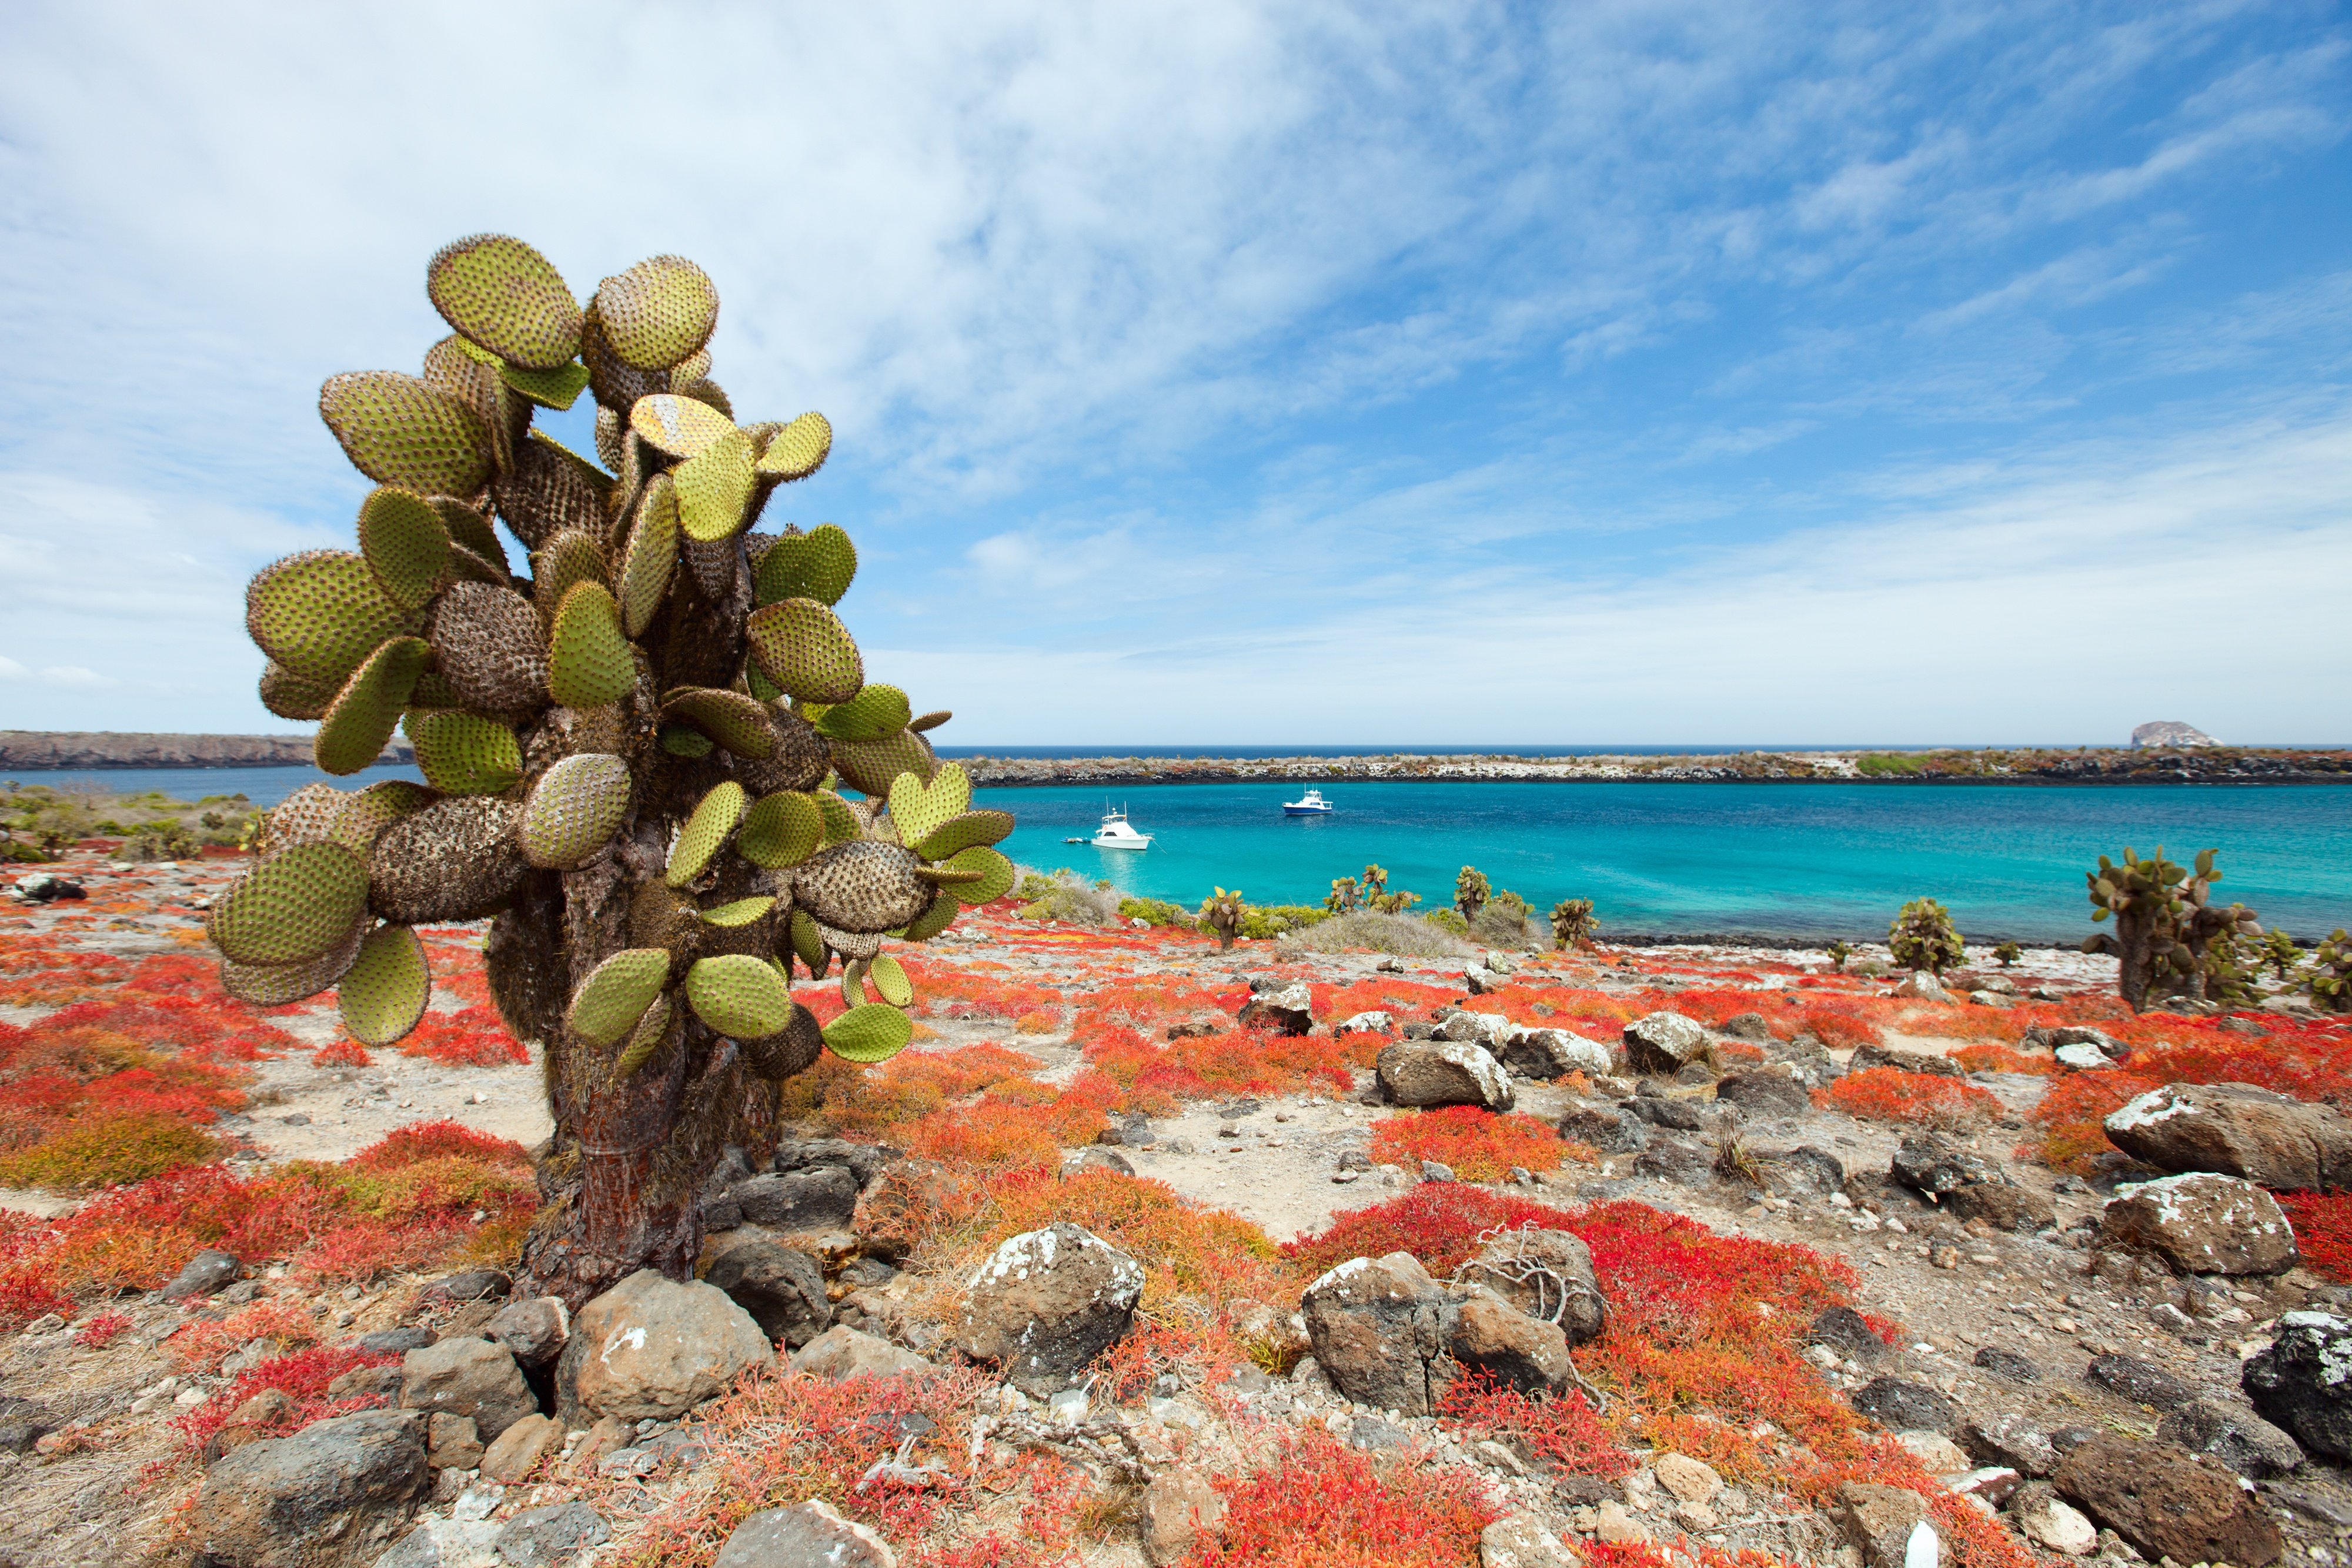 Cactus on Galapagos Islands